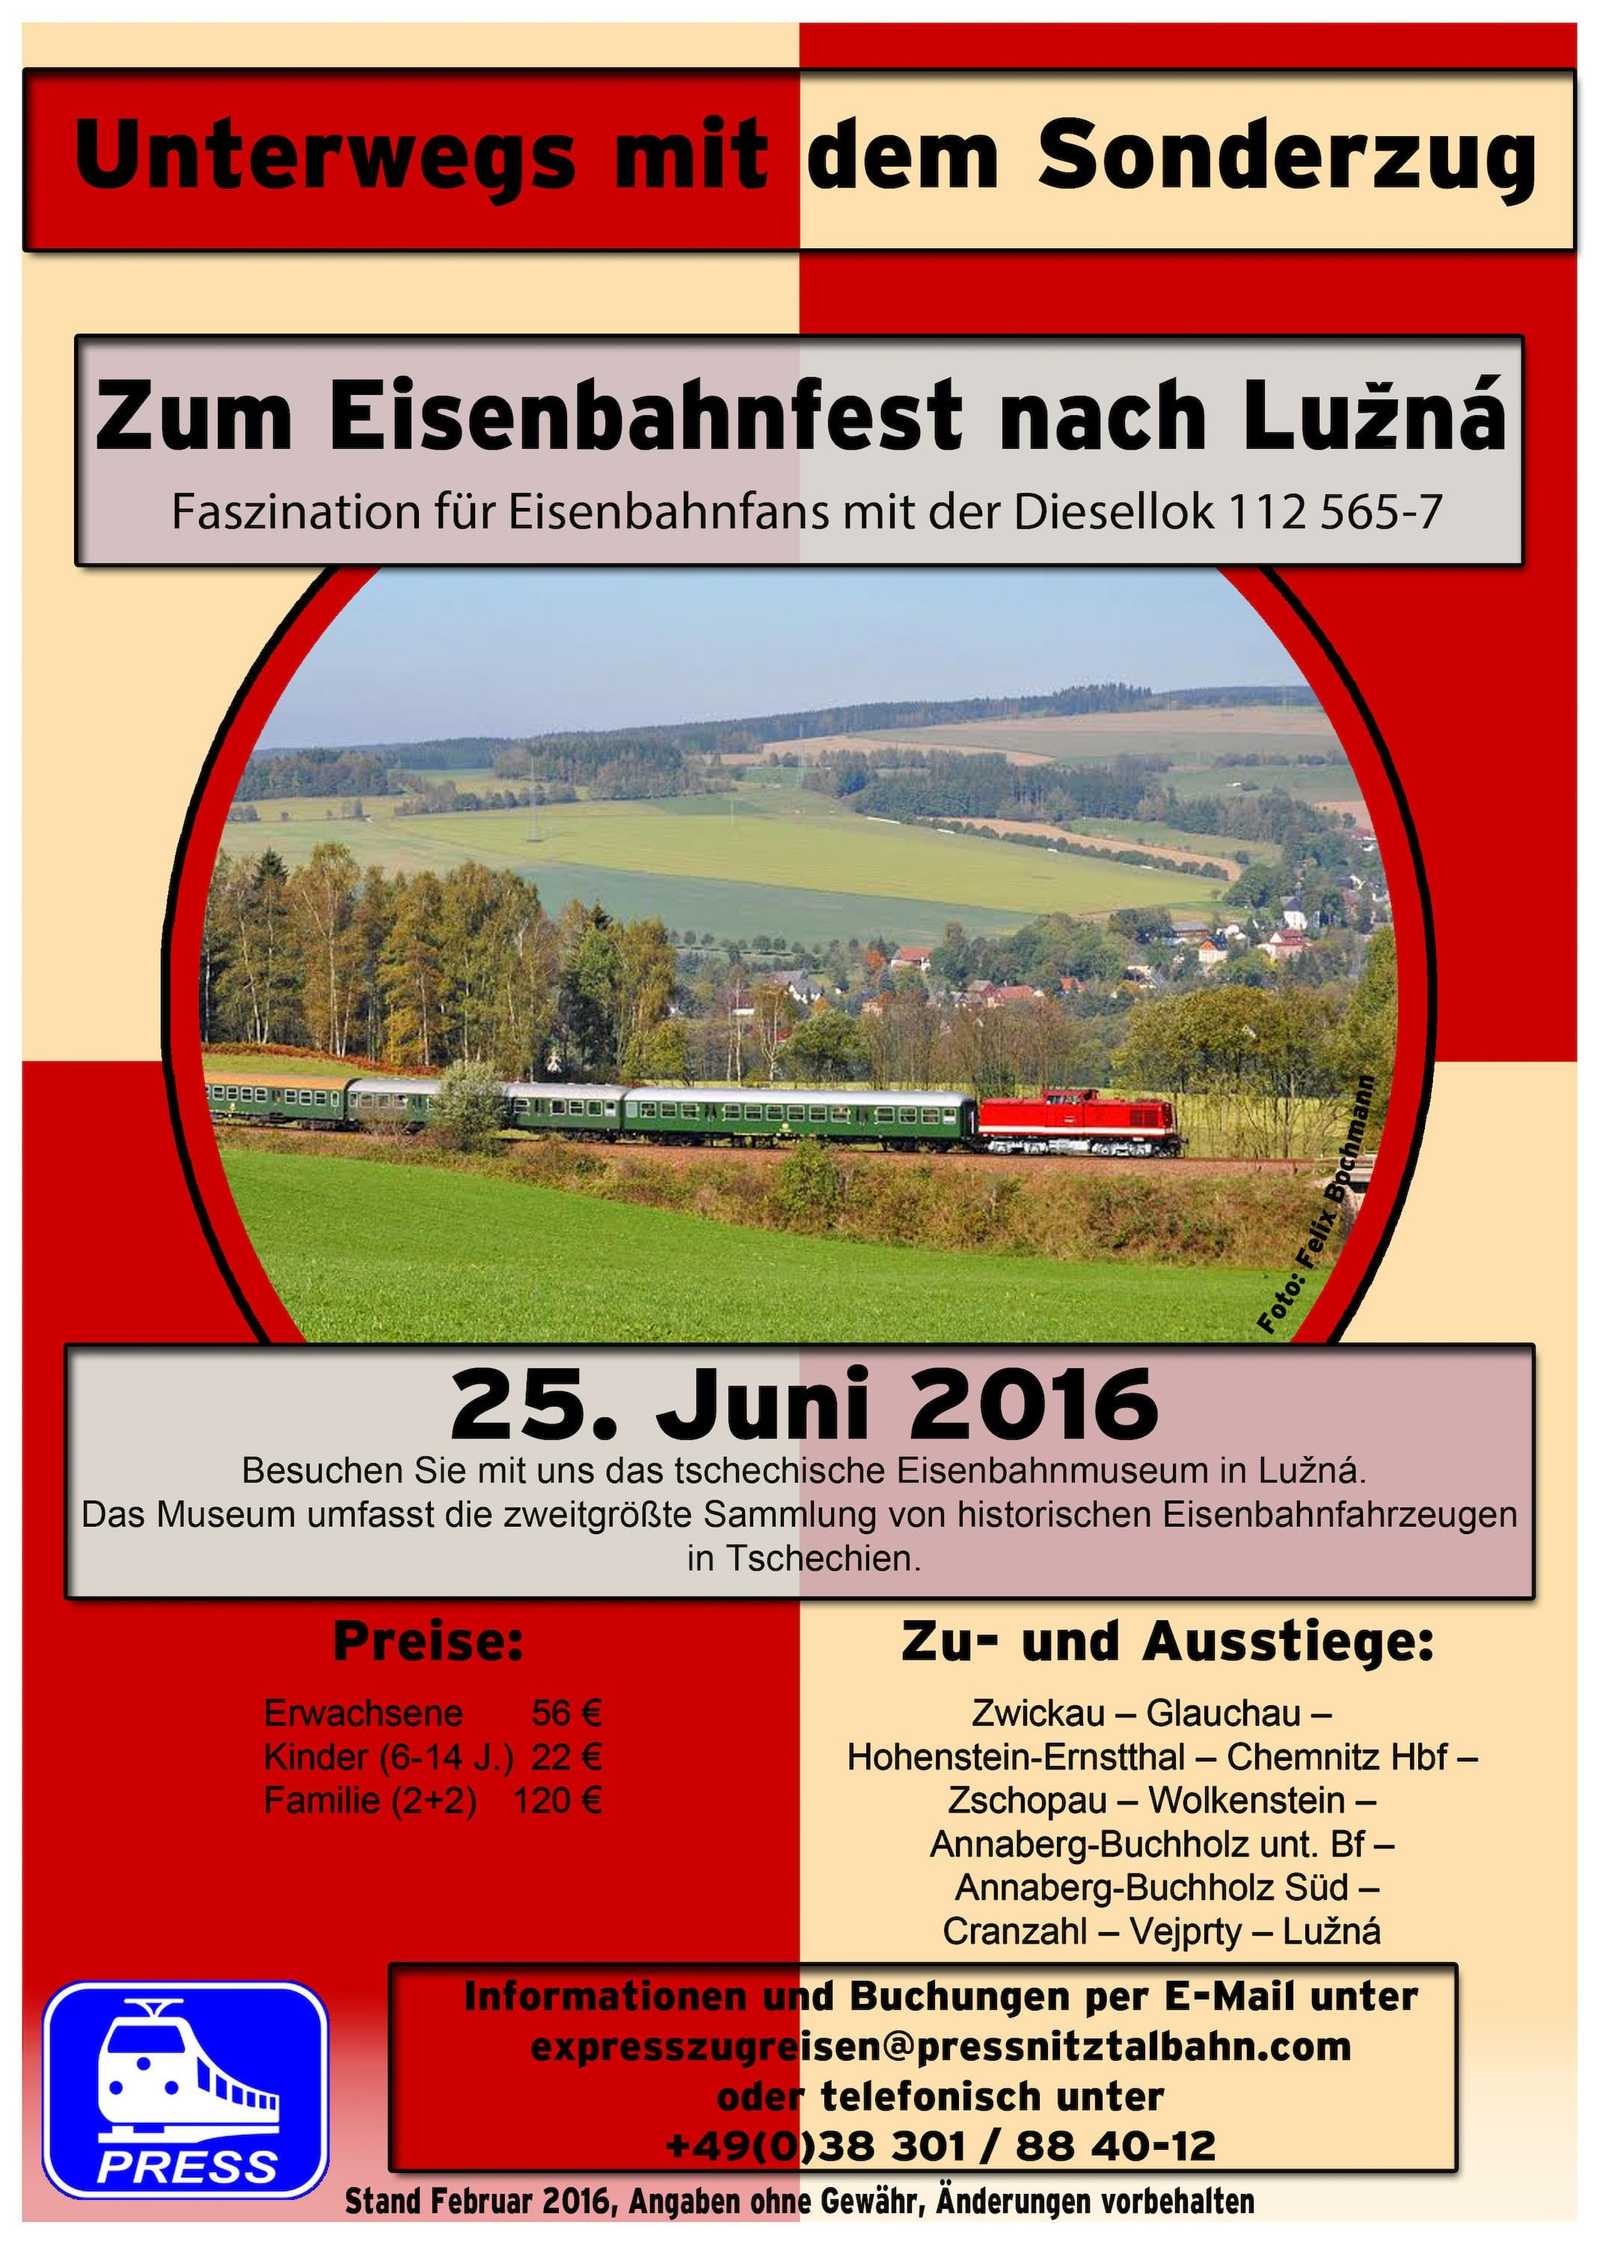 Veranstaltungsankündigung "Zum Eisenbahnfest nach Luzná" 25.6.2016